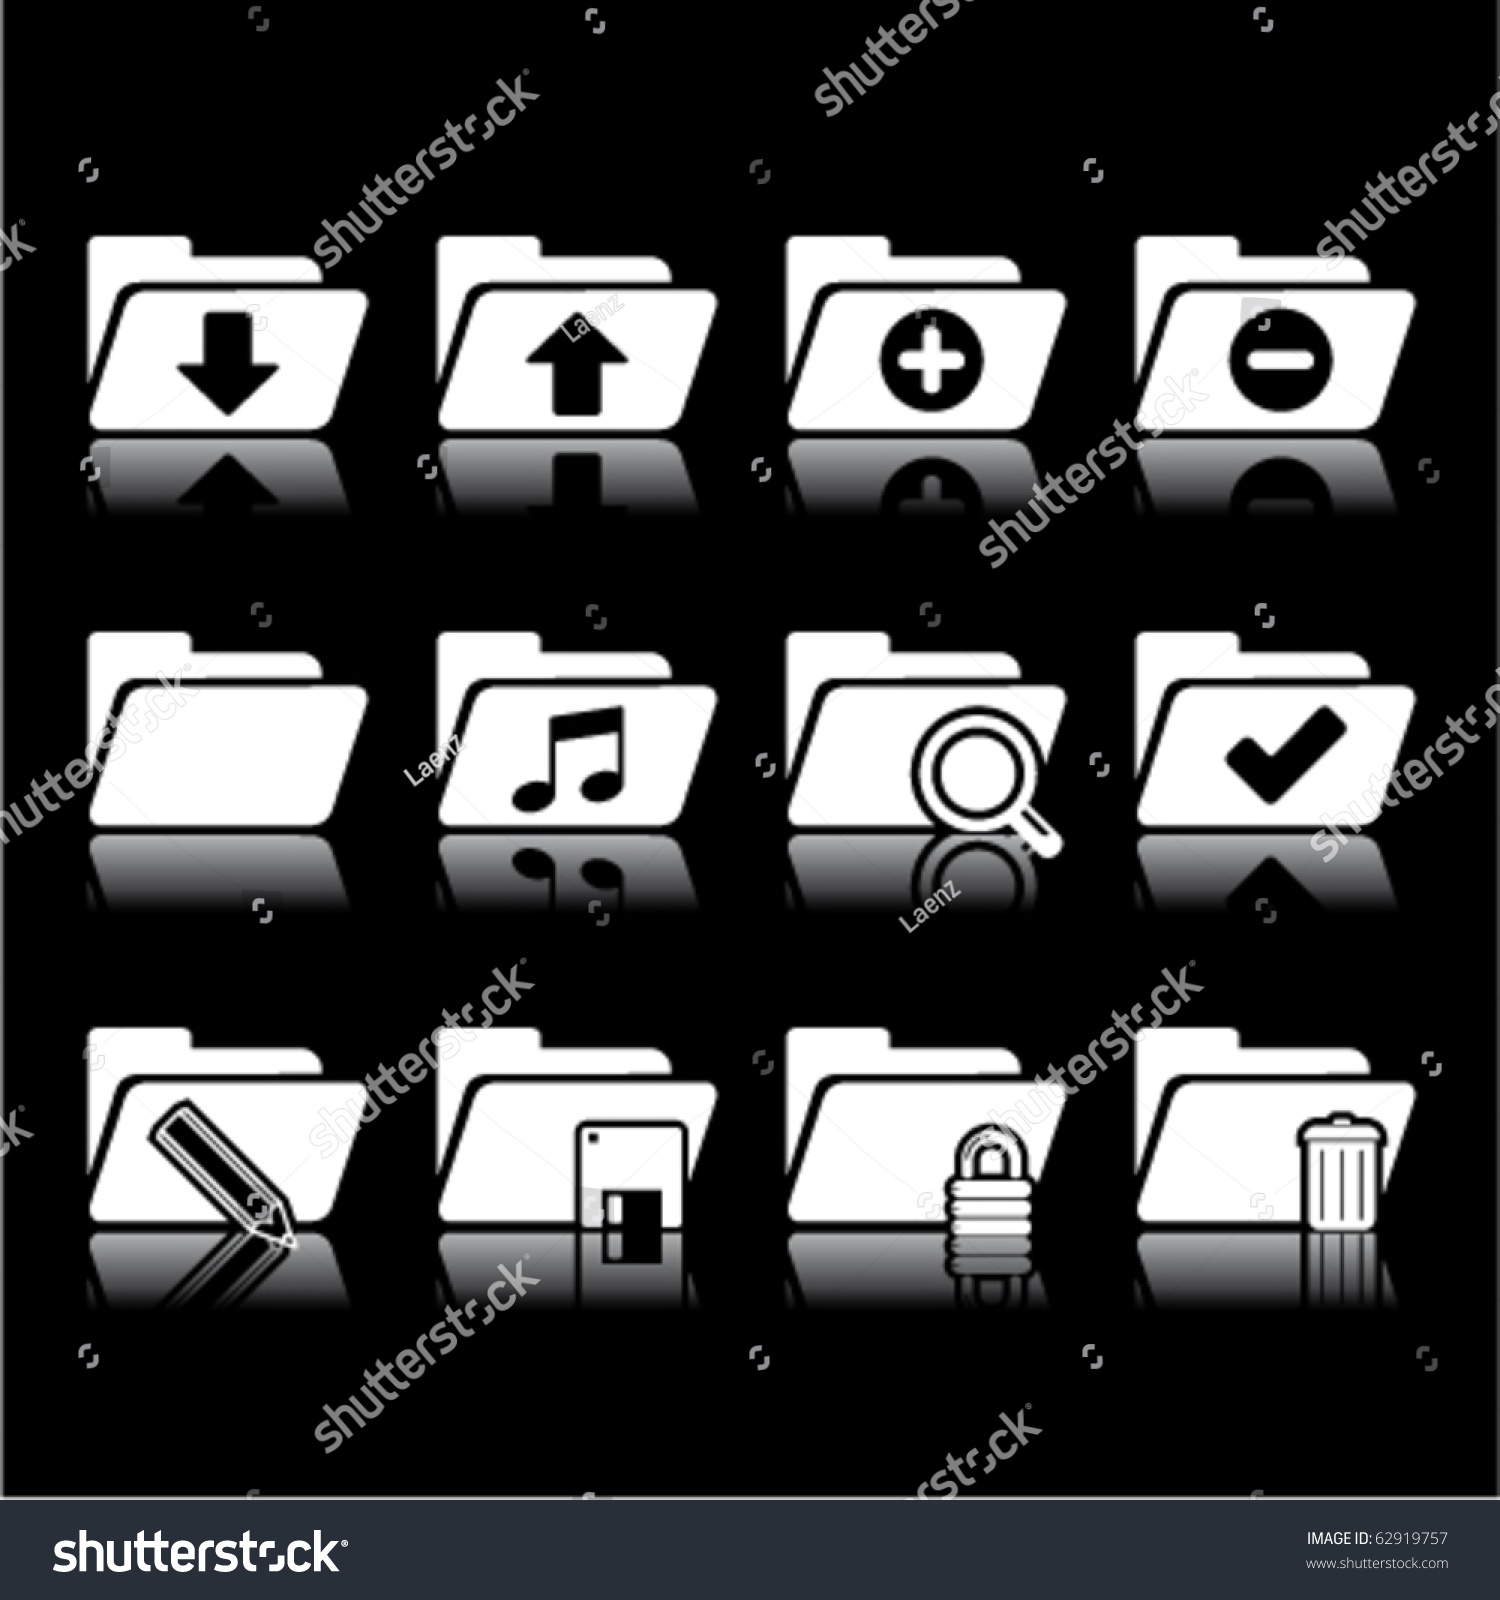 Folder Icons On Black Stock Vector Illustration 62919757 : Shutterstock